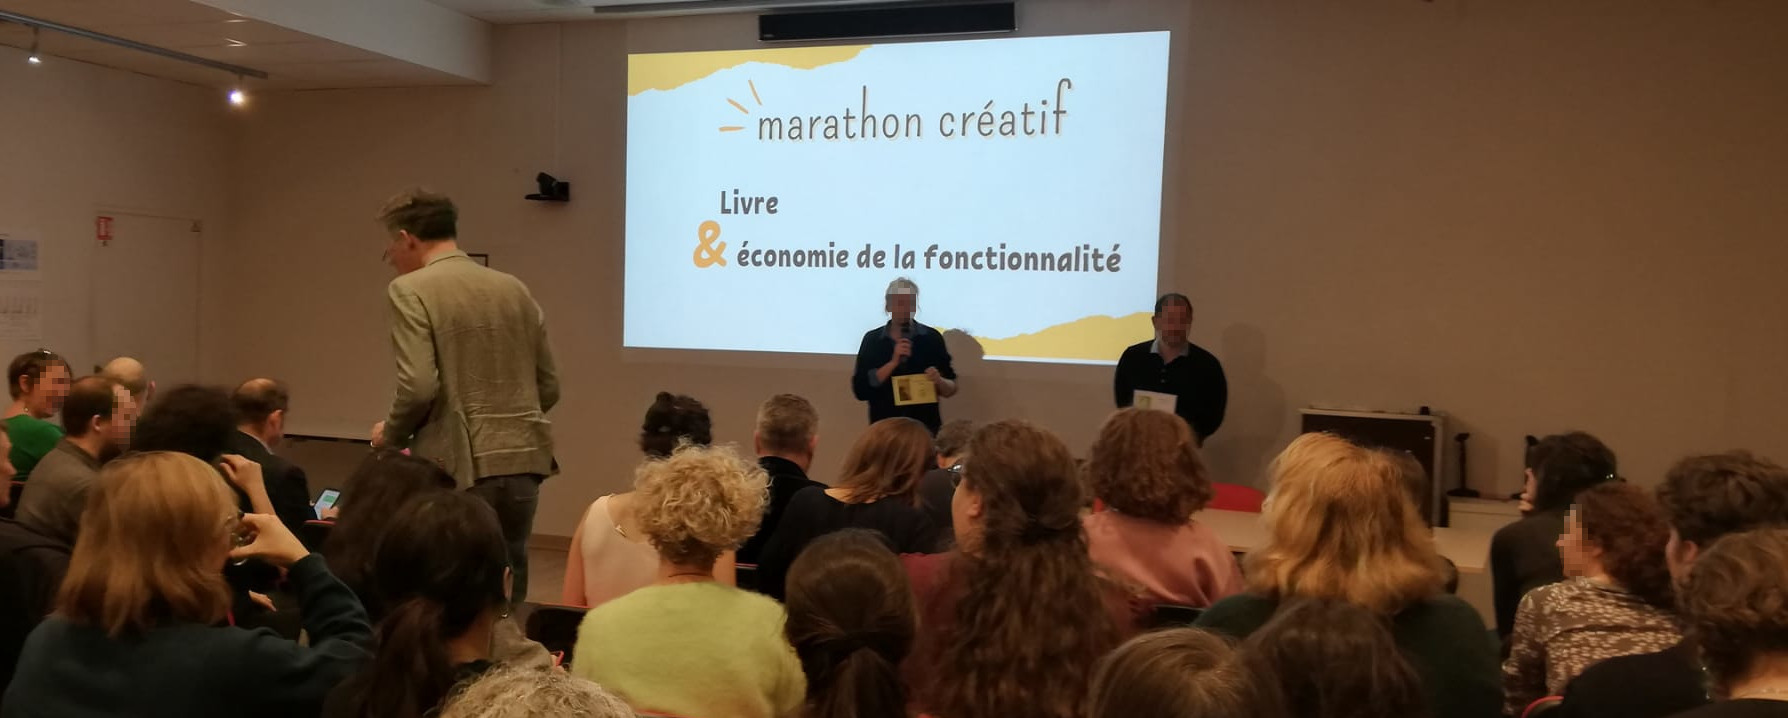 Retour sur la journée « Marathon créatif : Livre & économie de la fonctionnalité et de la coopération »